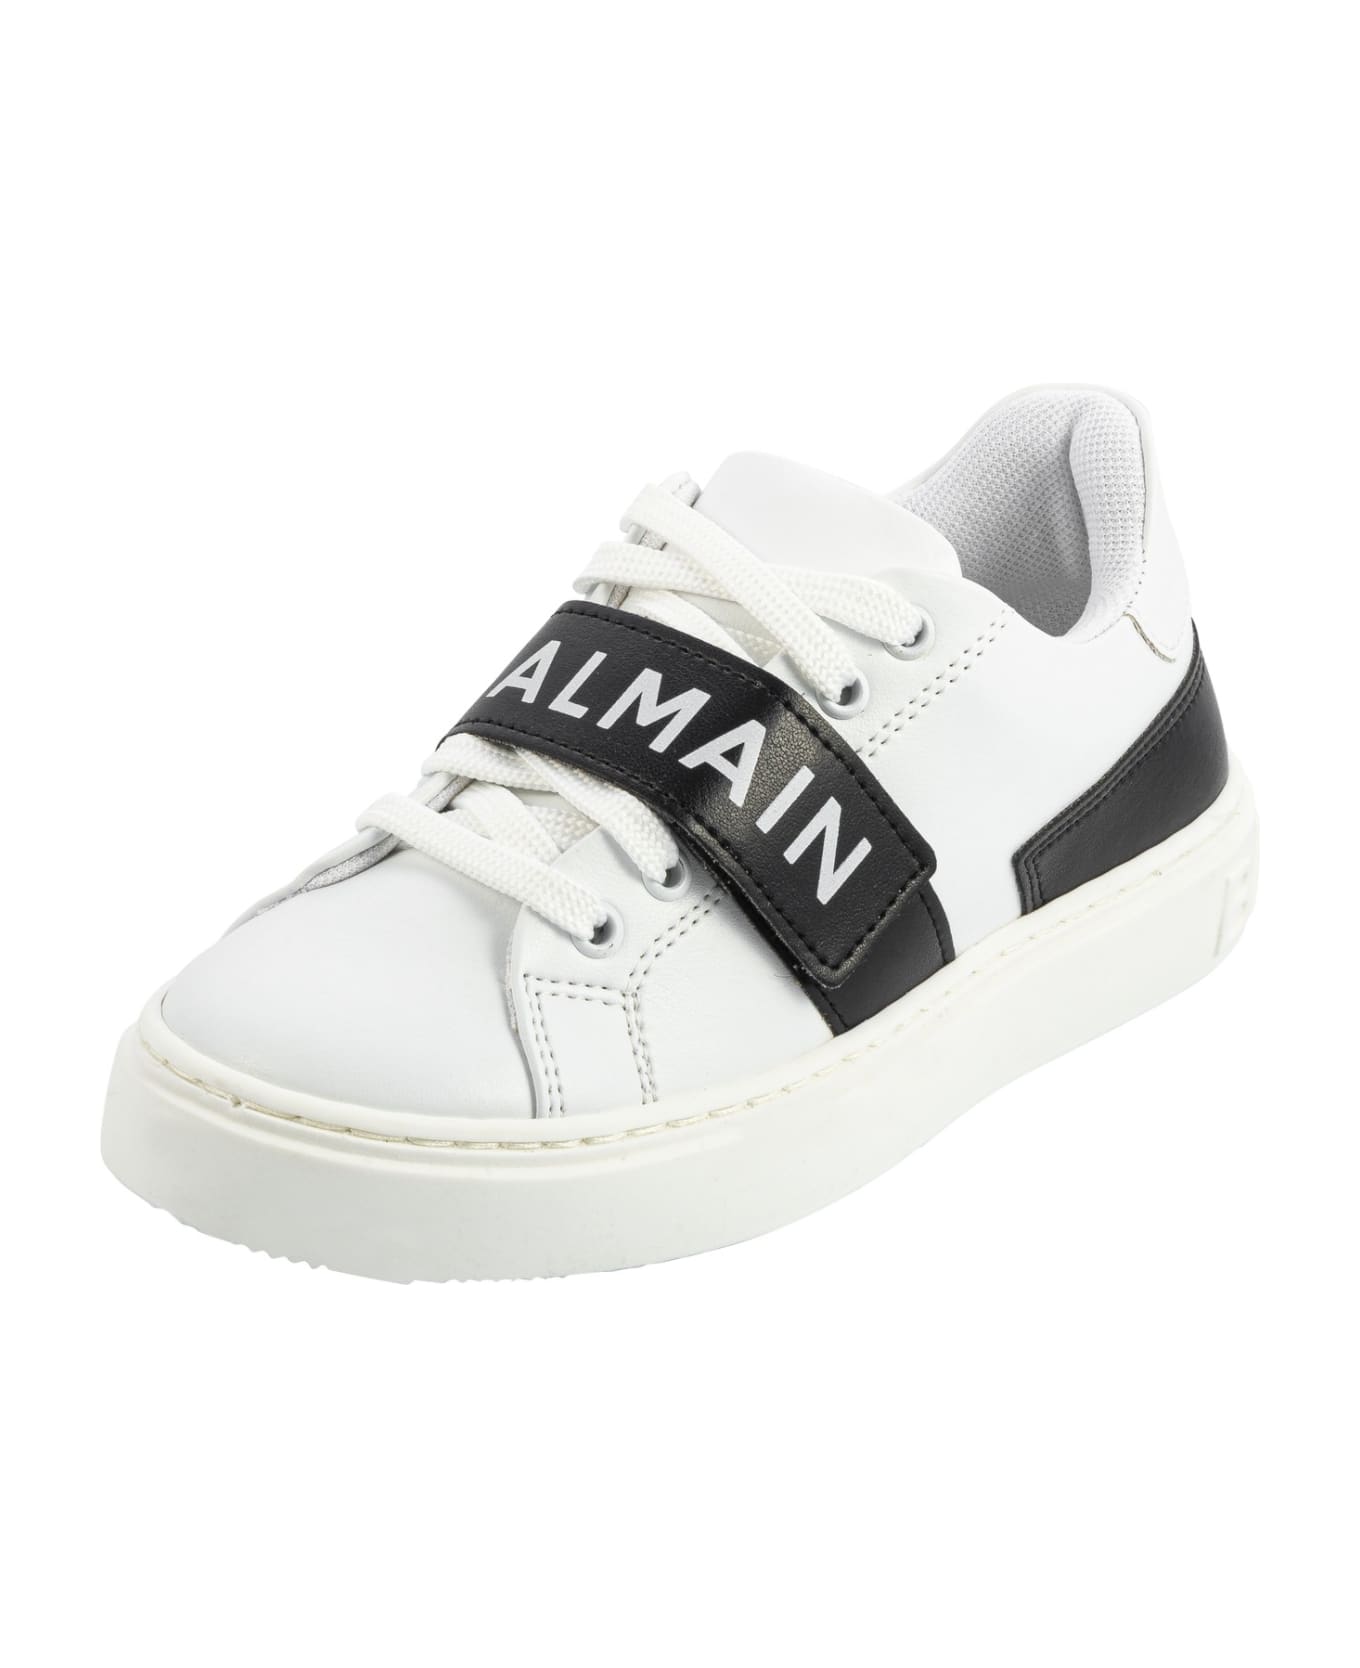 Balmain Sneakers With Logo - White